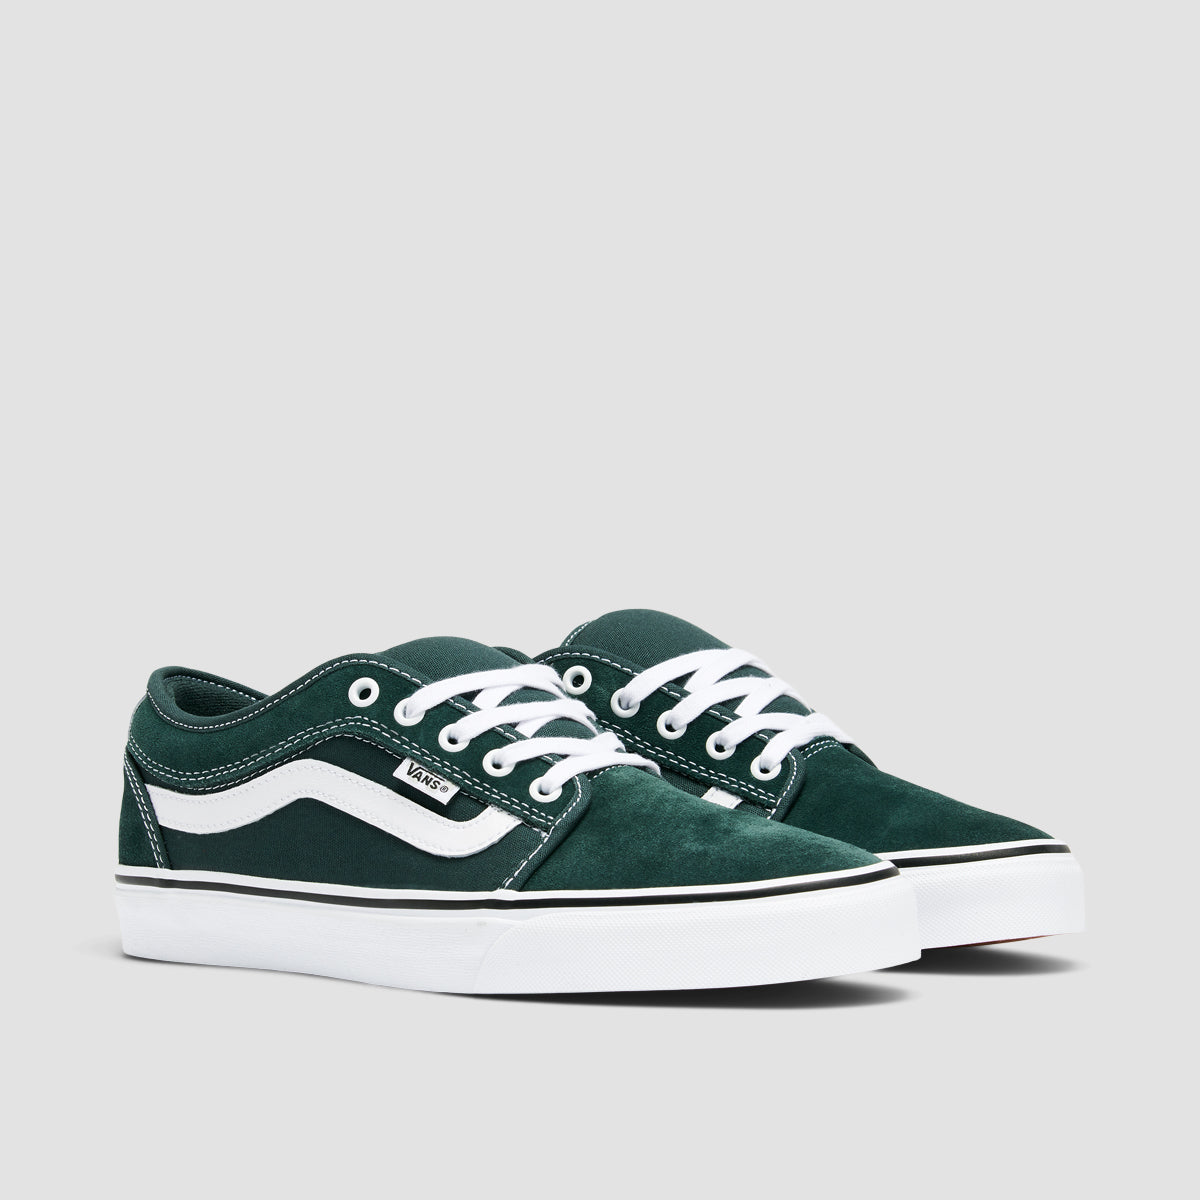 Vans Skate Chukka Low Sidestripe Shoes - Green Gables/True White